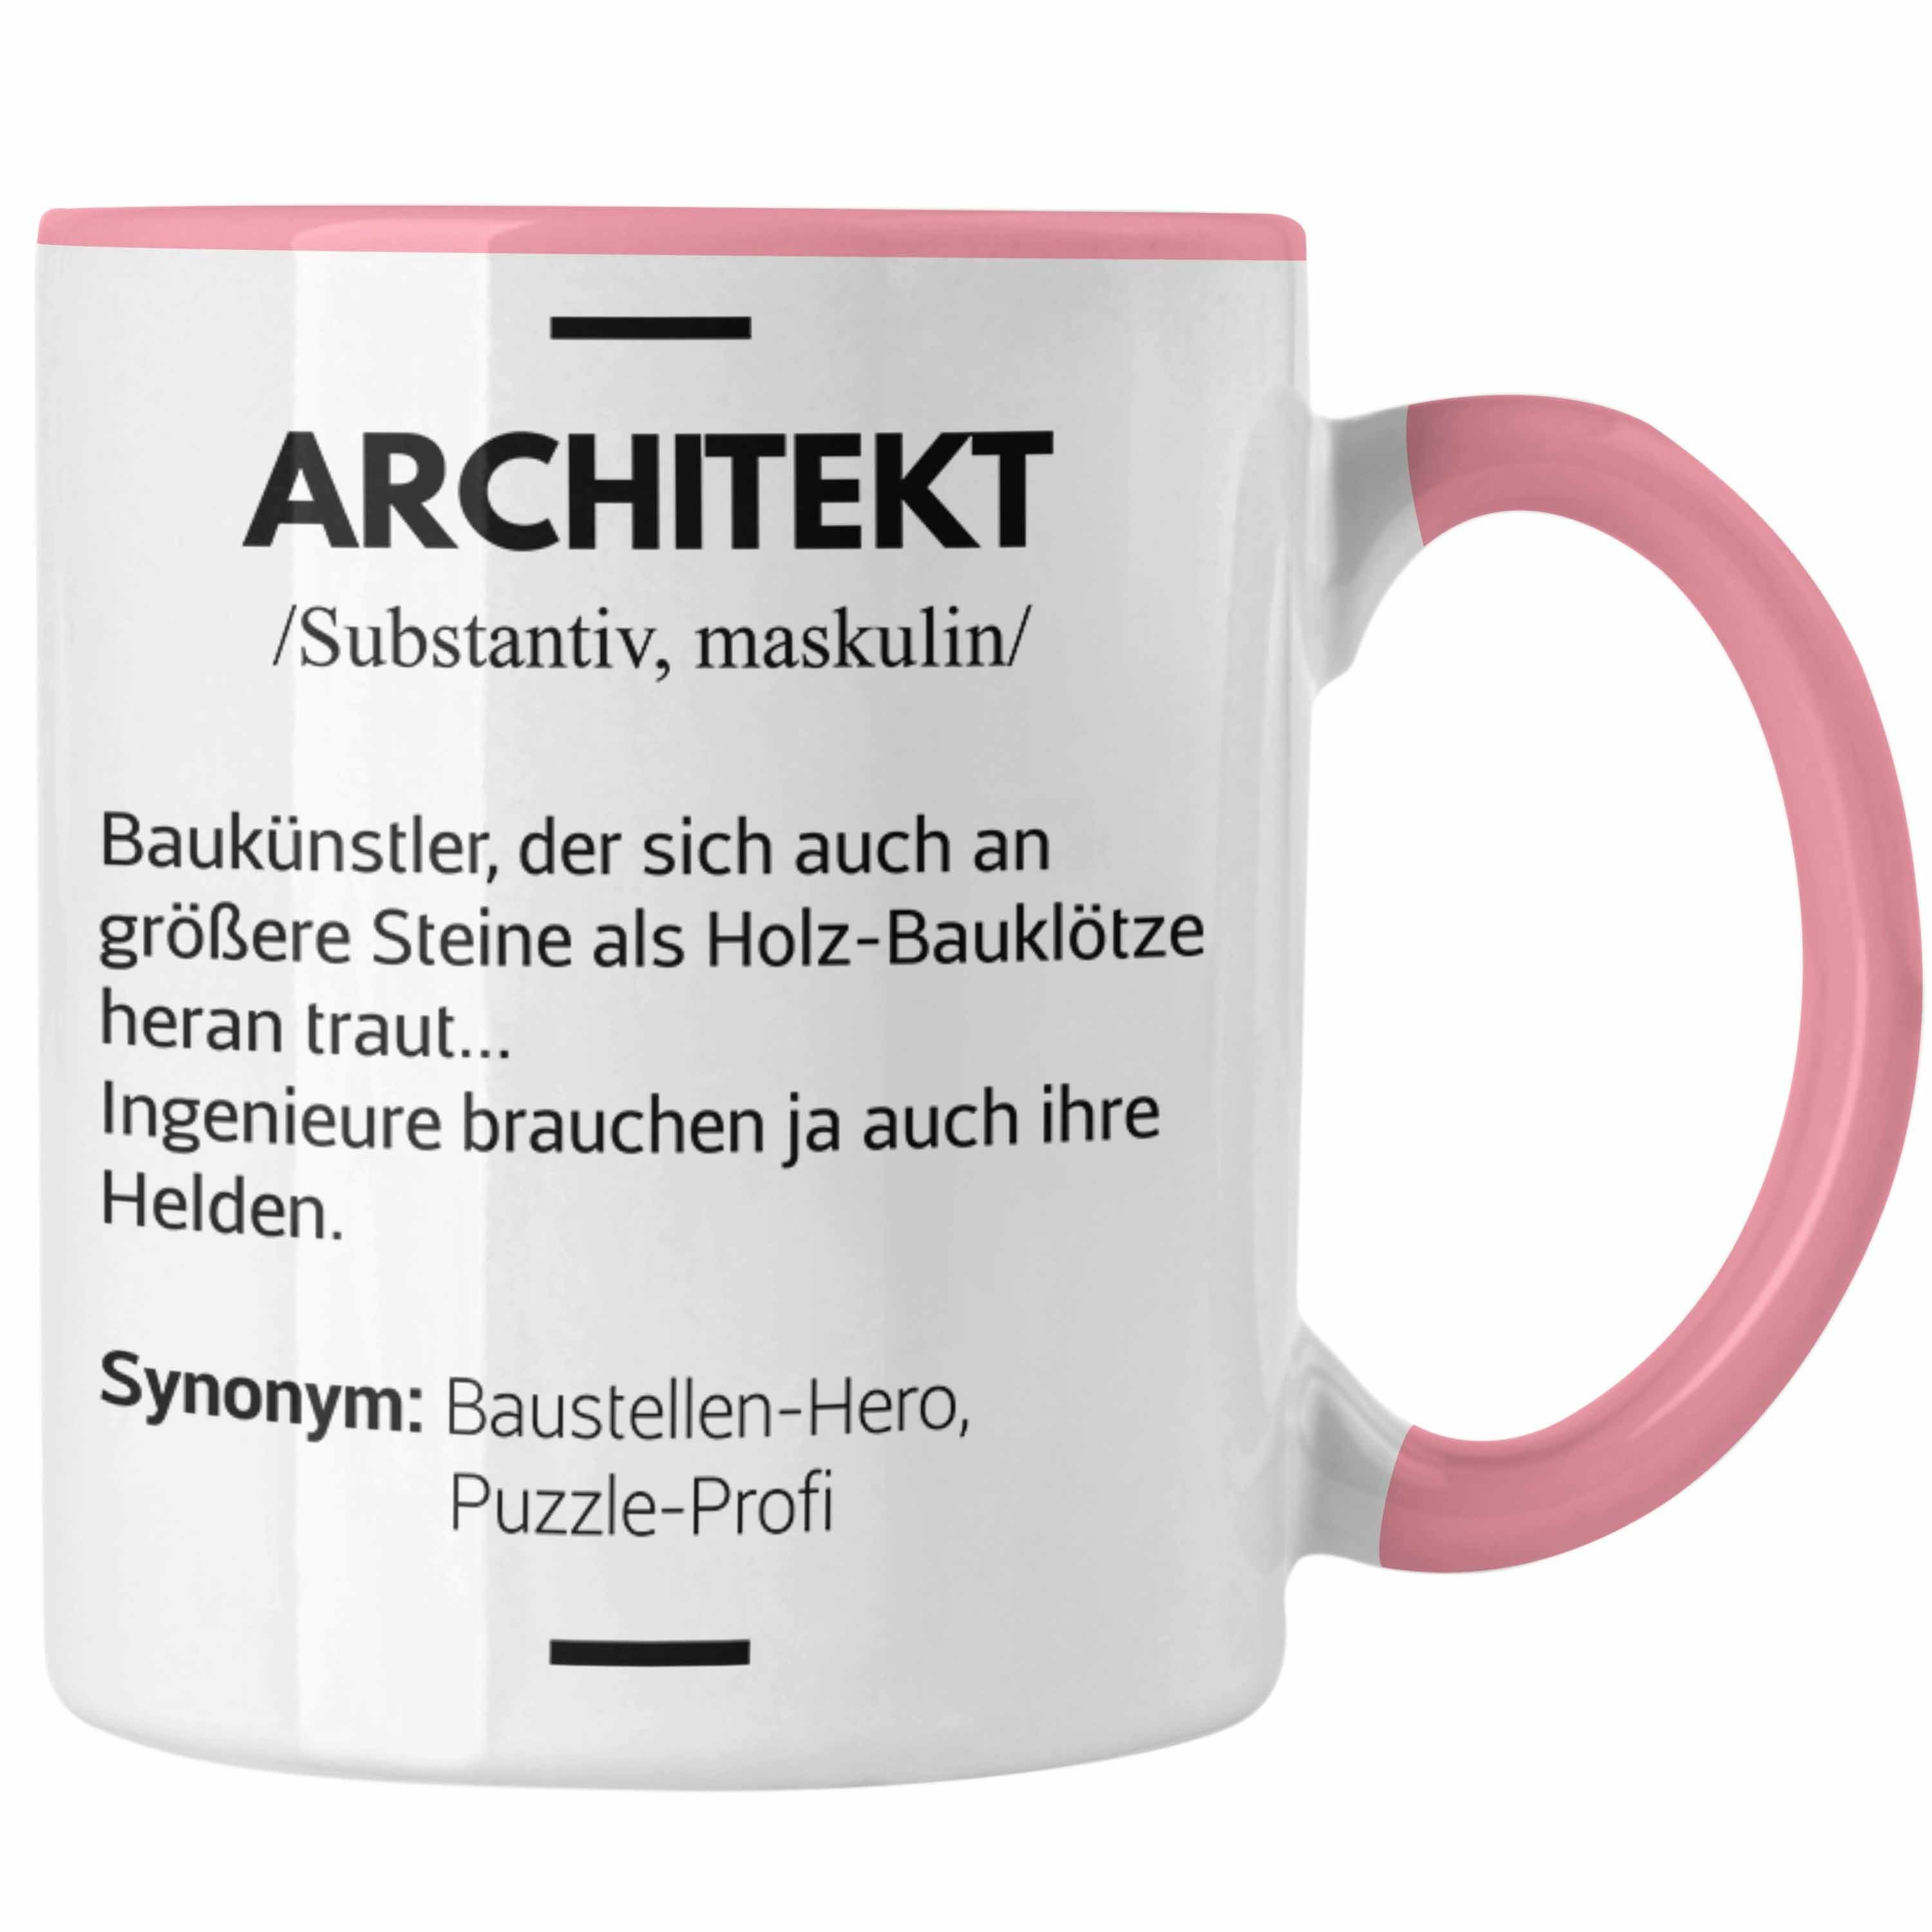 Trendation Tasse Trendation - Architekt Geschenke Tasse Lustig Kaffeetasse mit Spruch Architektur Architekten Geschenkidee Spruch Rosa